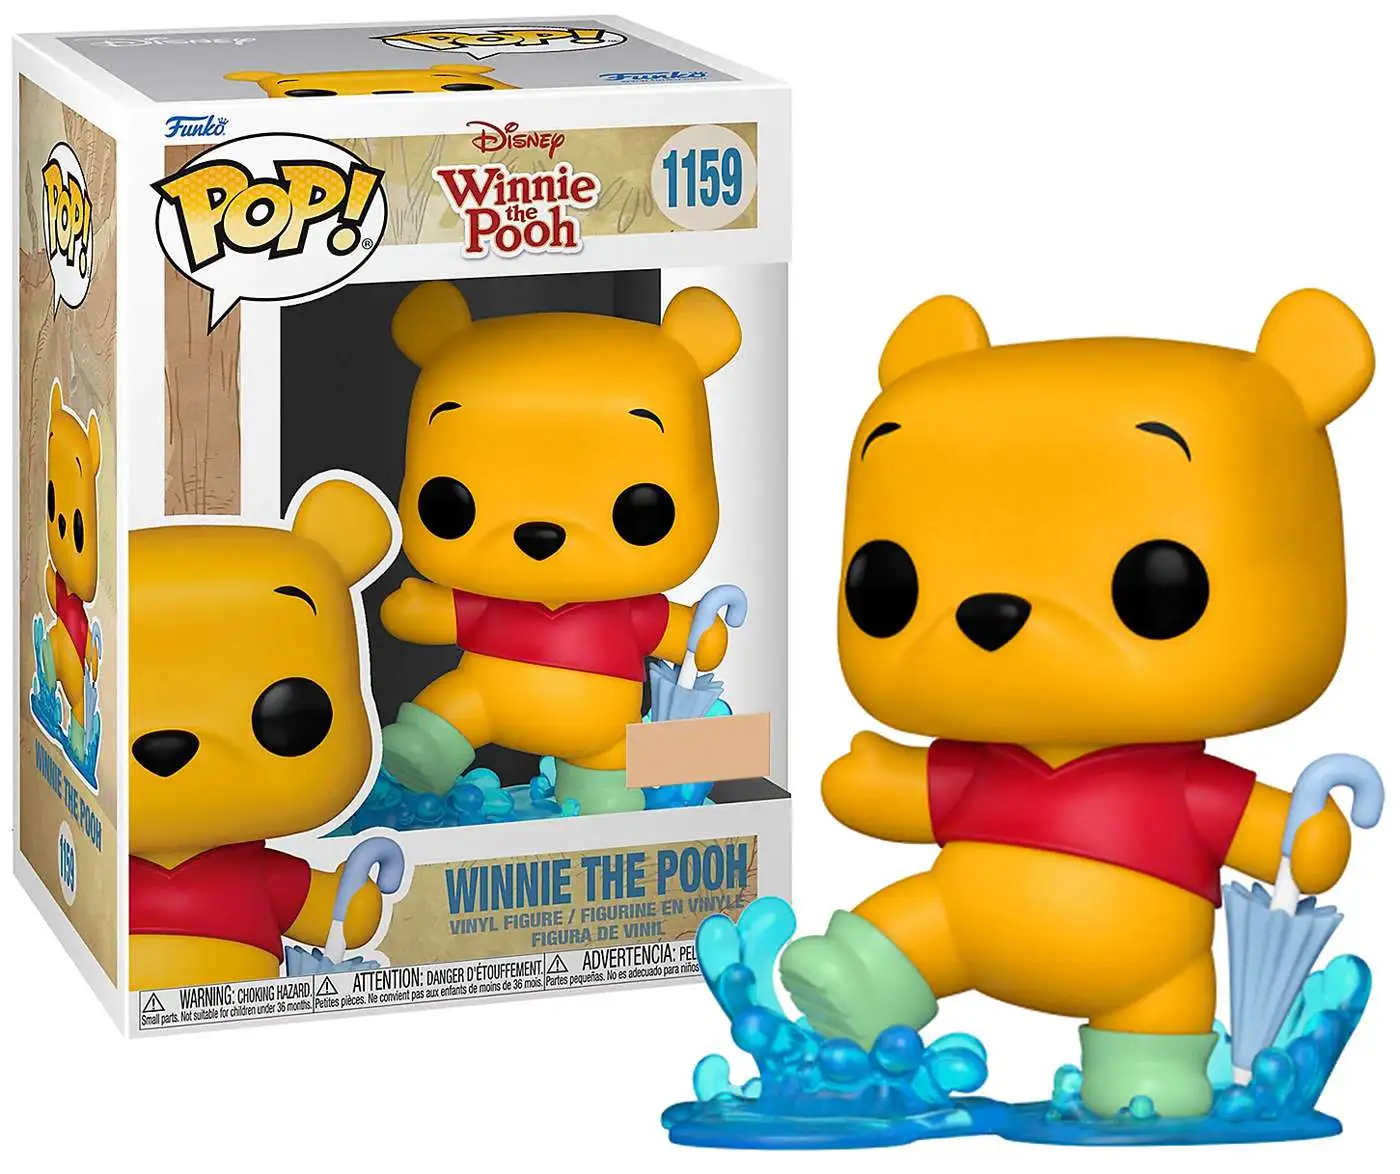 Vinyl Figure NEW Funko Winnie the Pooh Pooh Seated Pop 